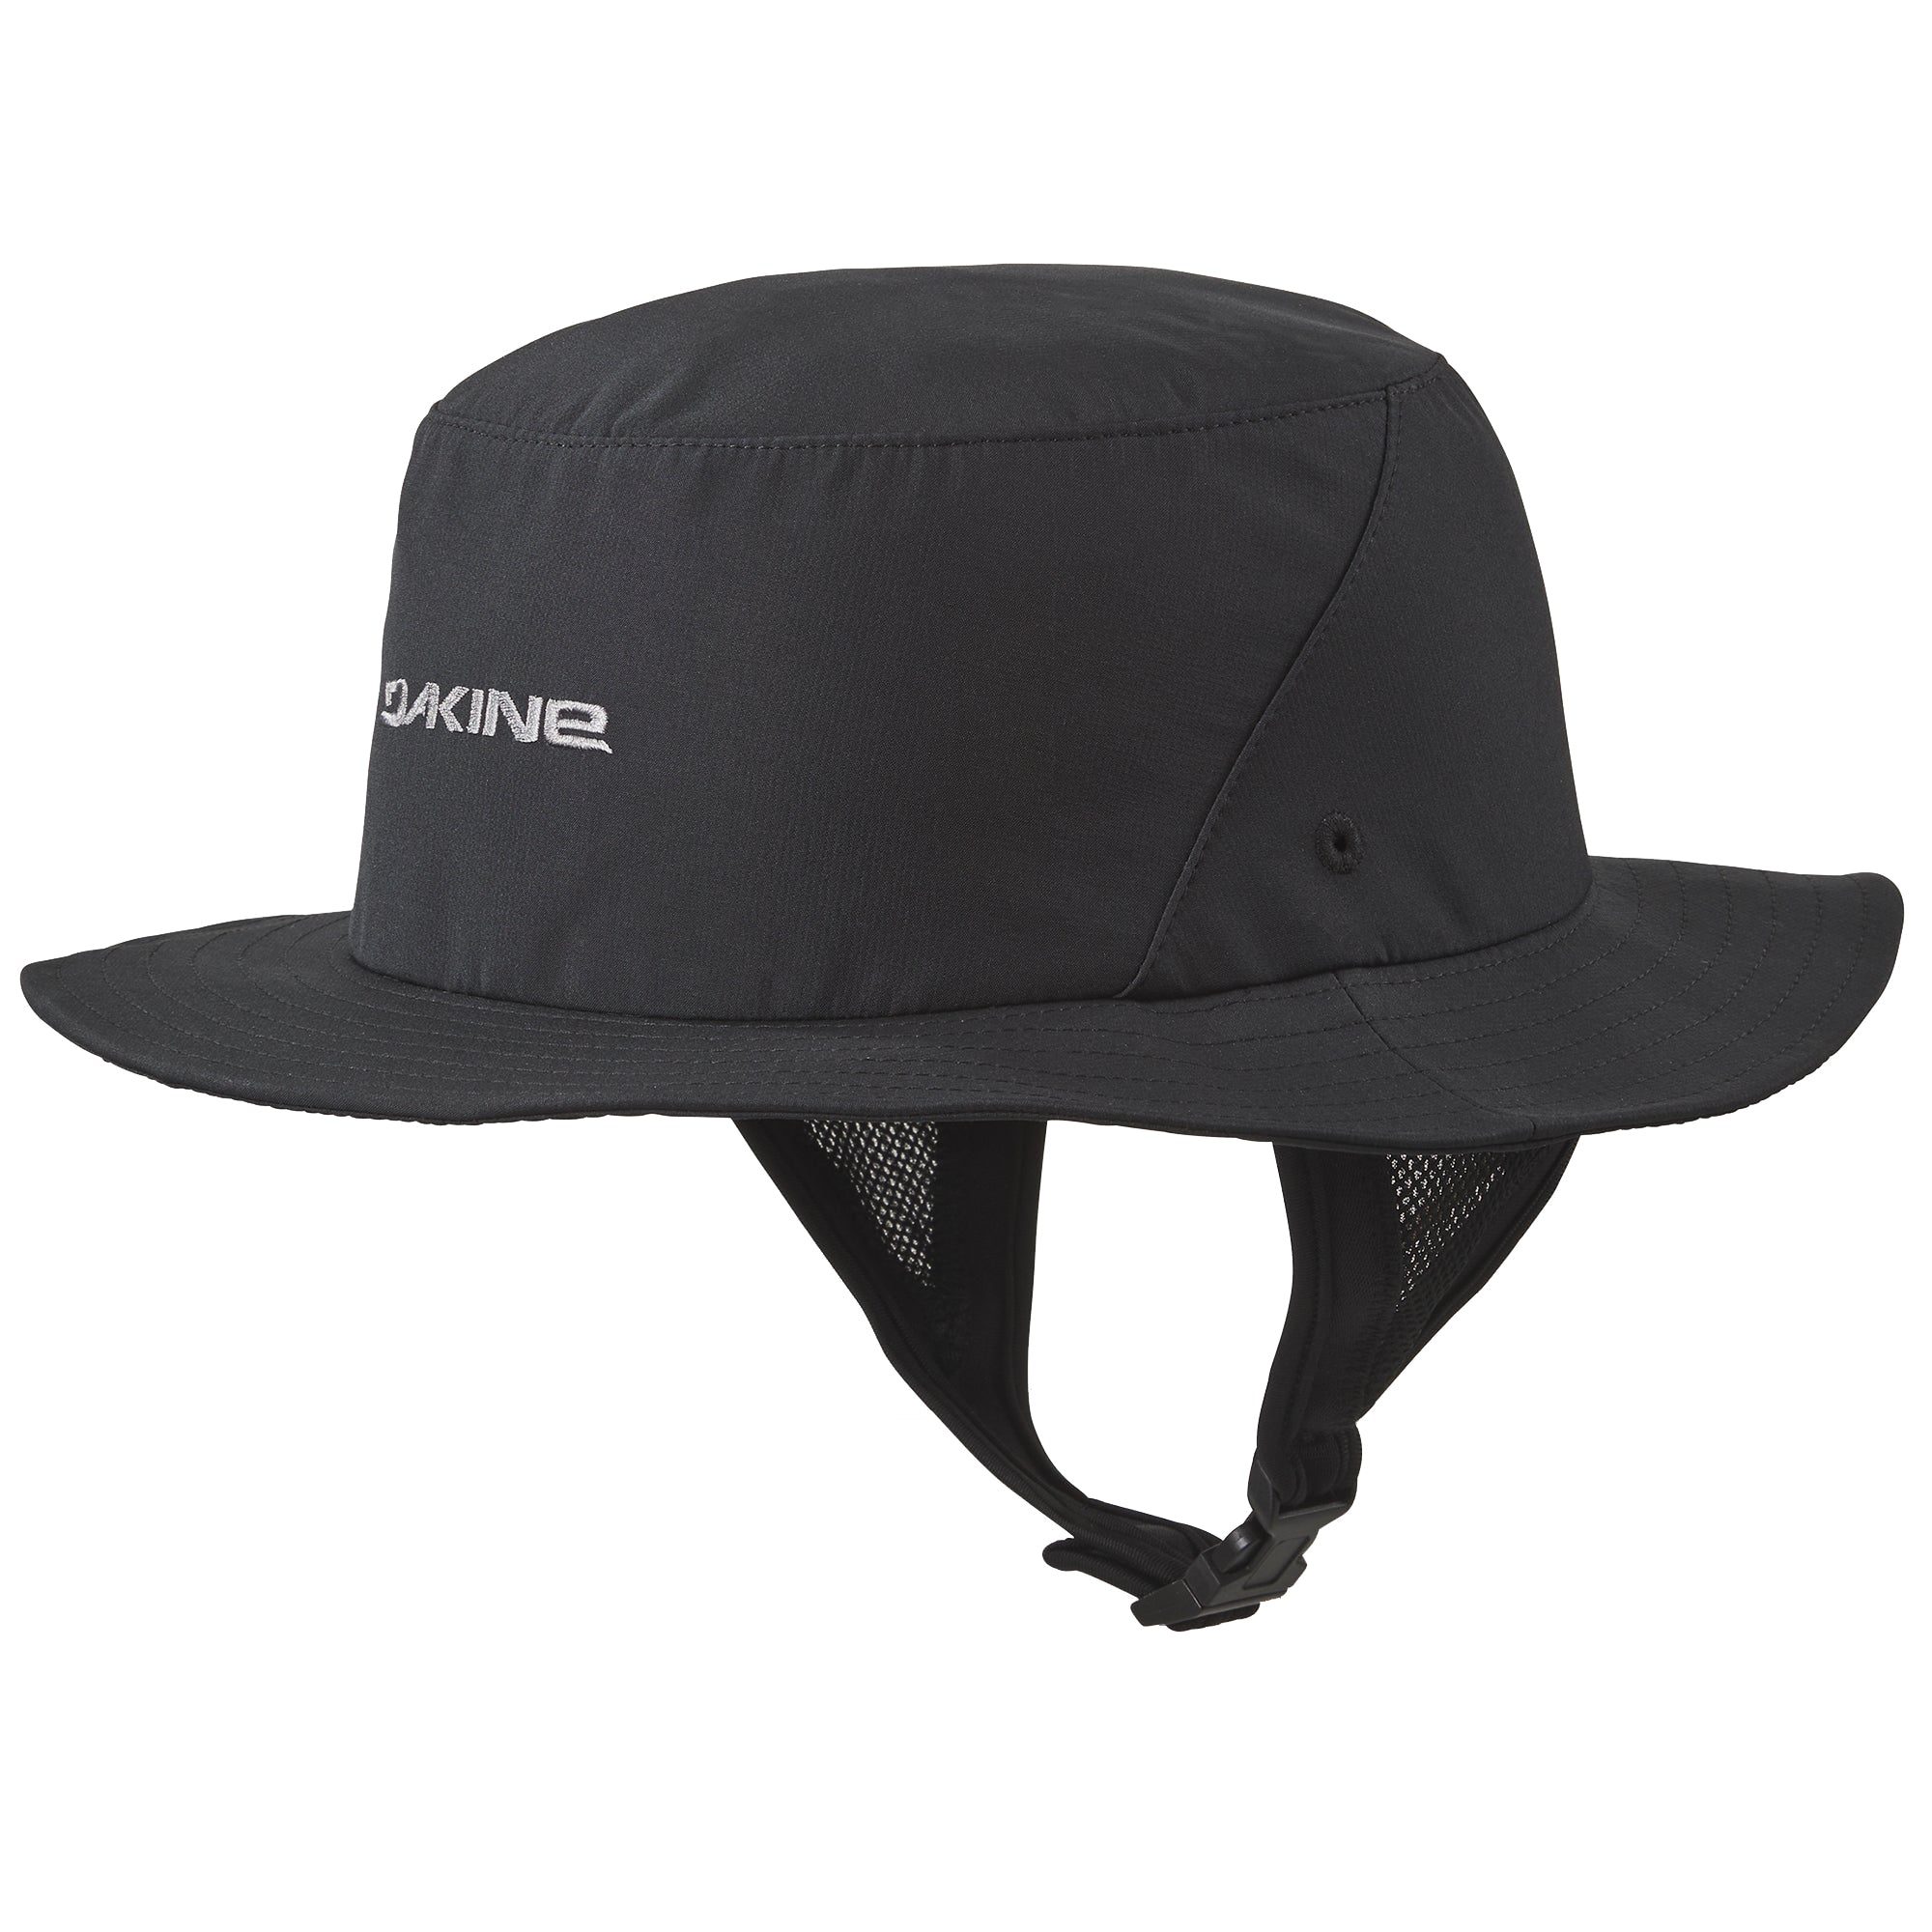 Dakine Indo Surf Hat 001-Black S/M